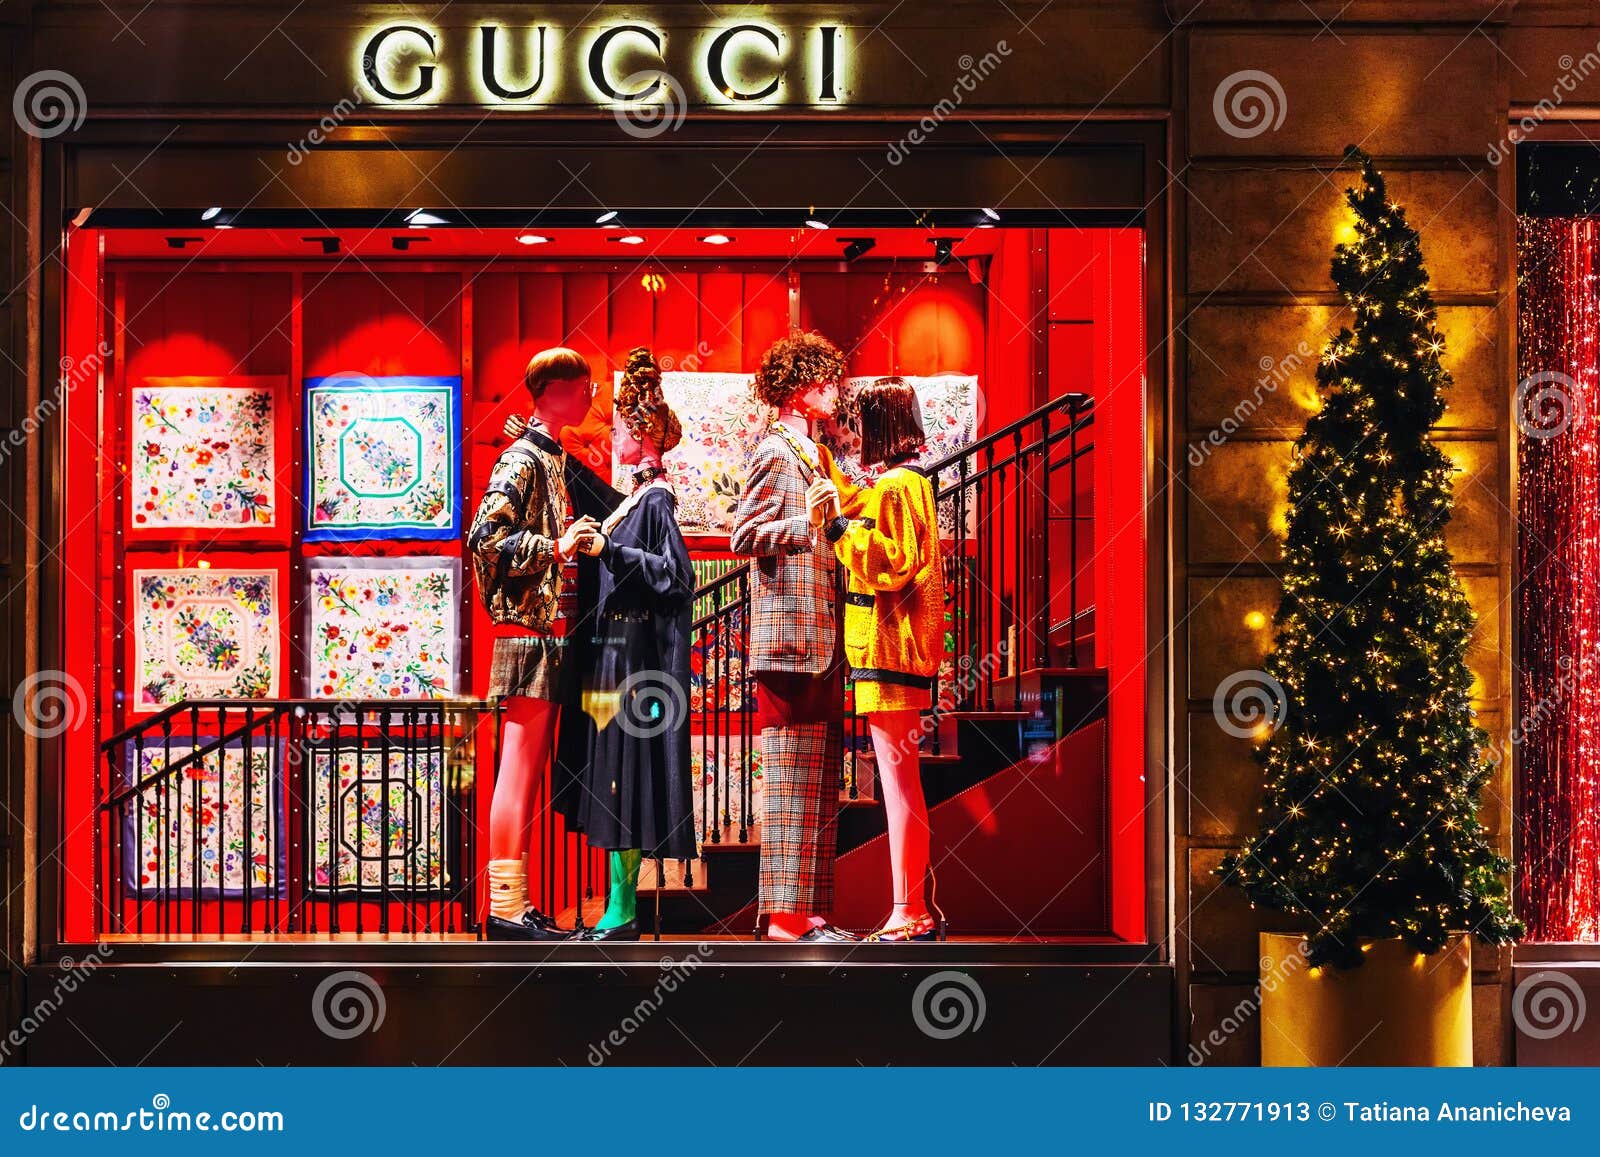 Perth Blackborough logica Probleem Showcase Van Gucci-opslag in Parijs in De Avond - Luxe Het Winkelen Concept  Redactionele Stock Foto - Image of zaken, ontwerp: 132771913